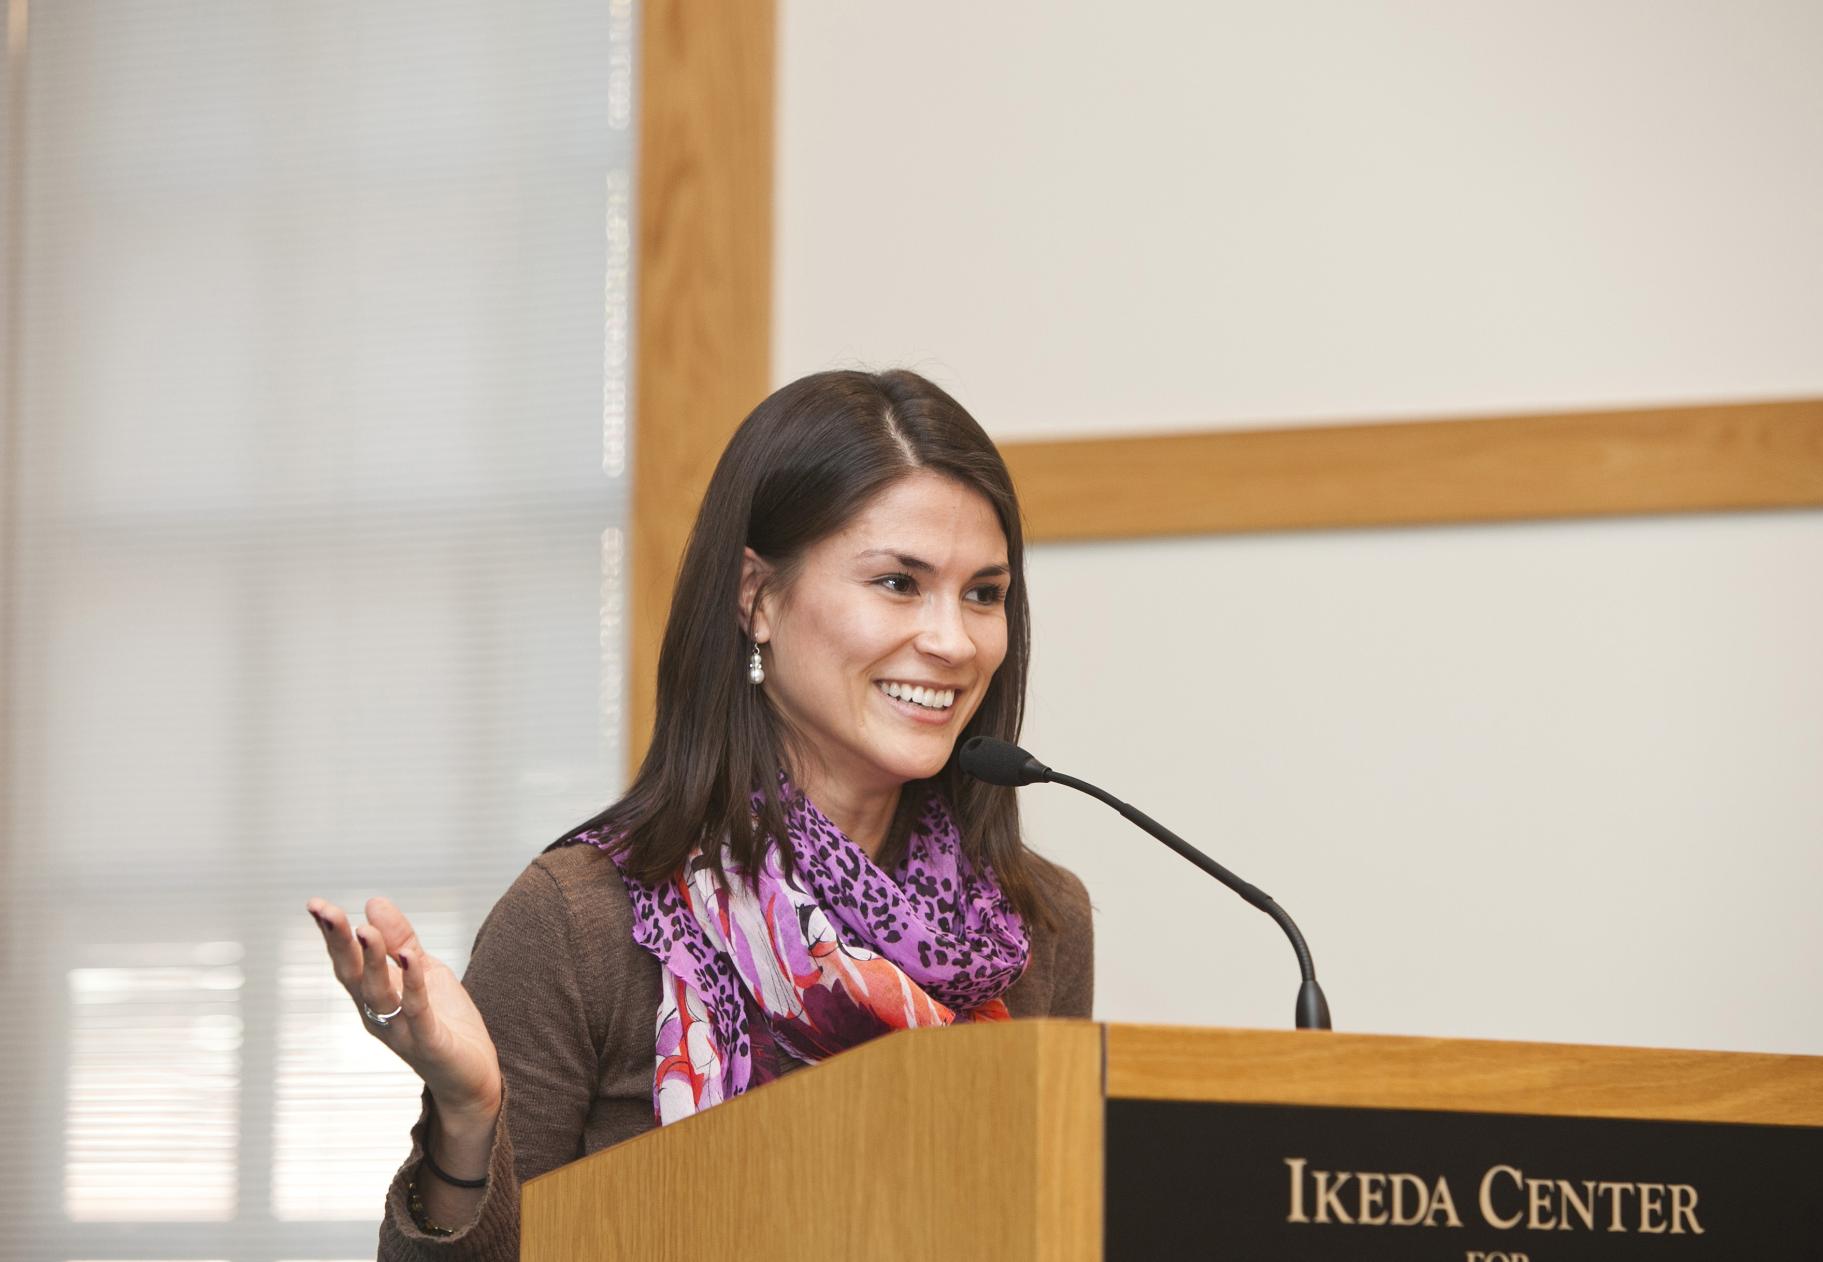 2012 Ikeda Forum moderator Julia Upton speaks at podium